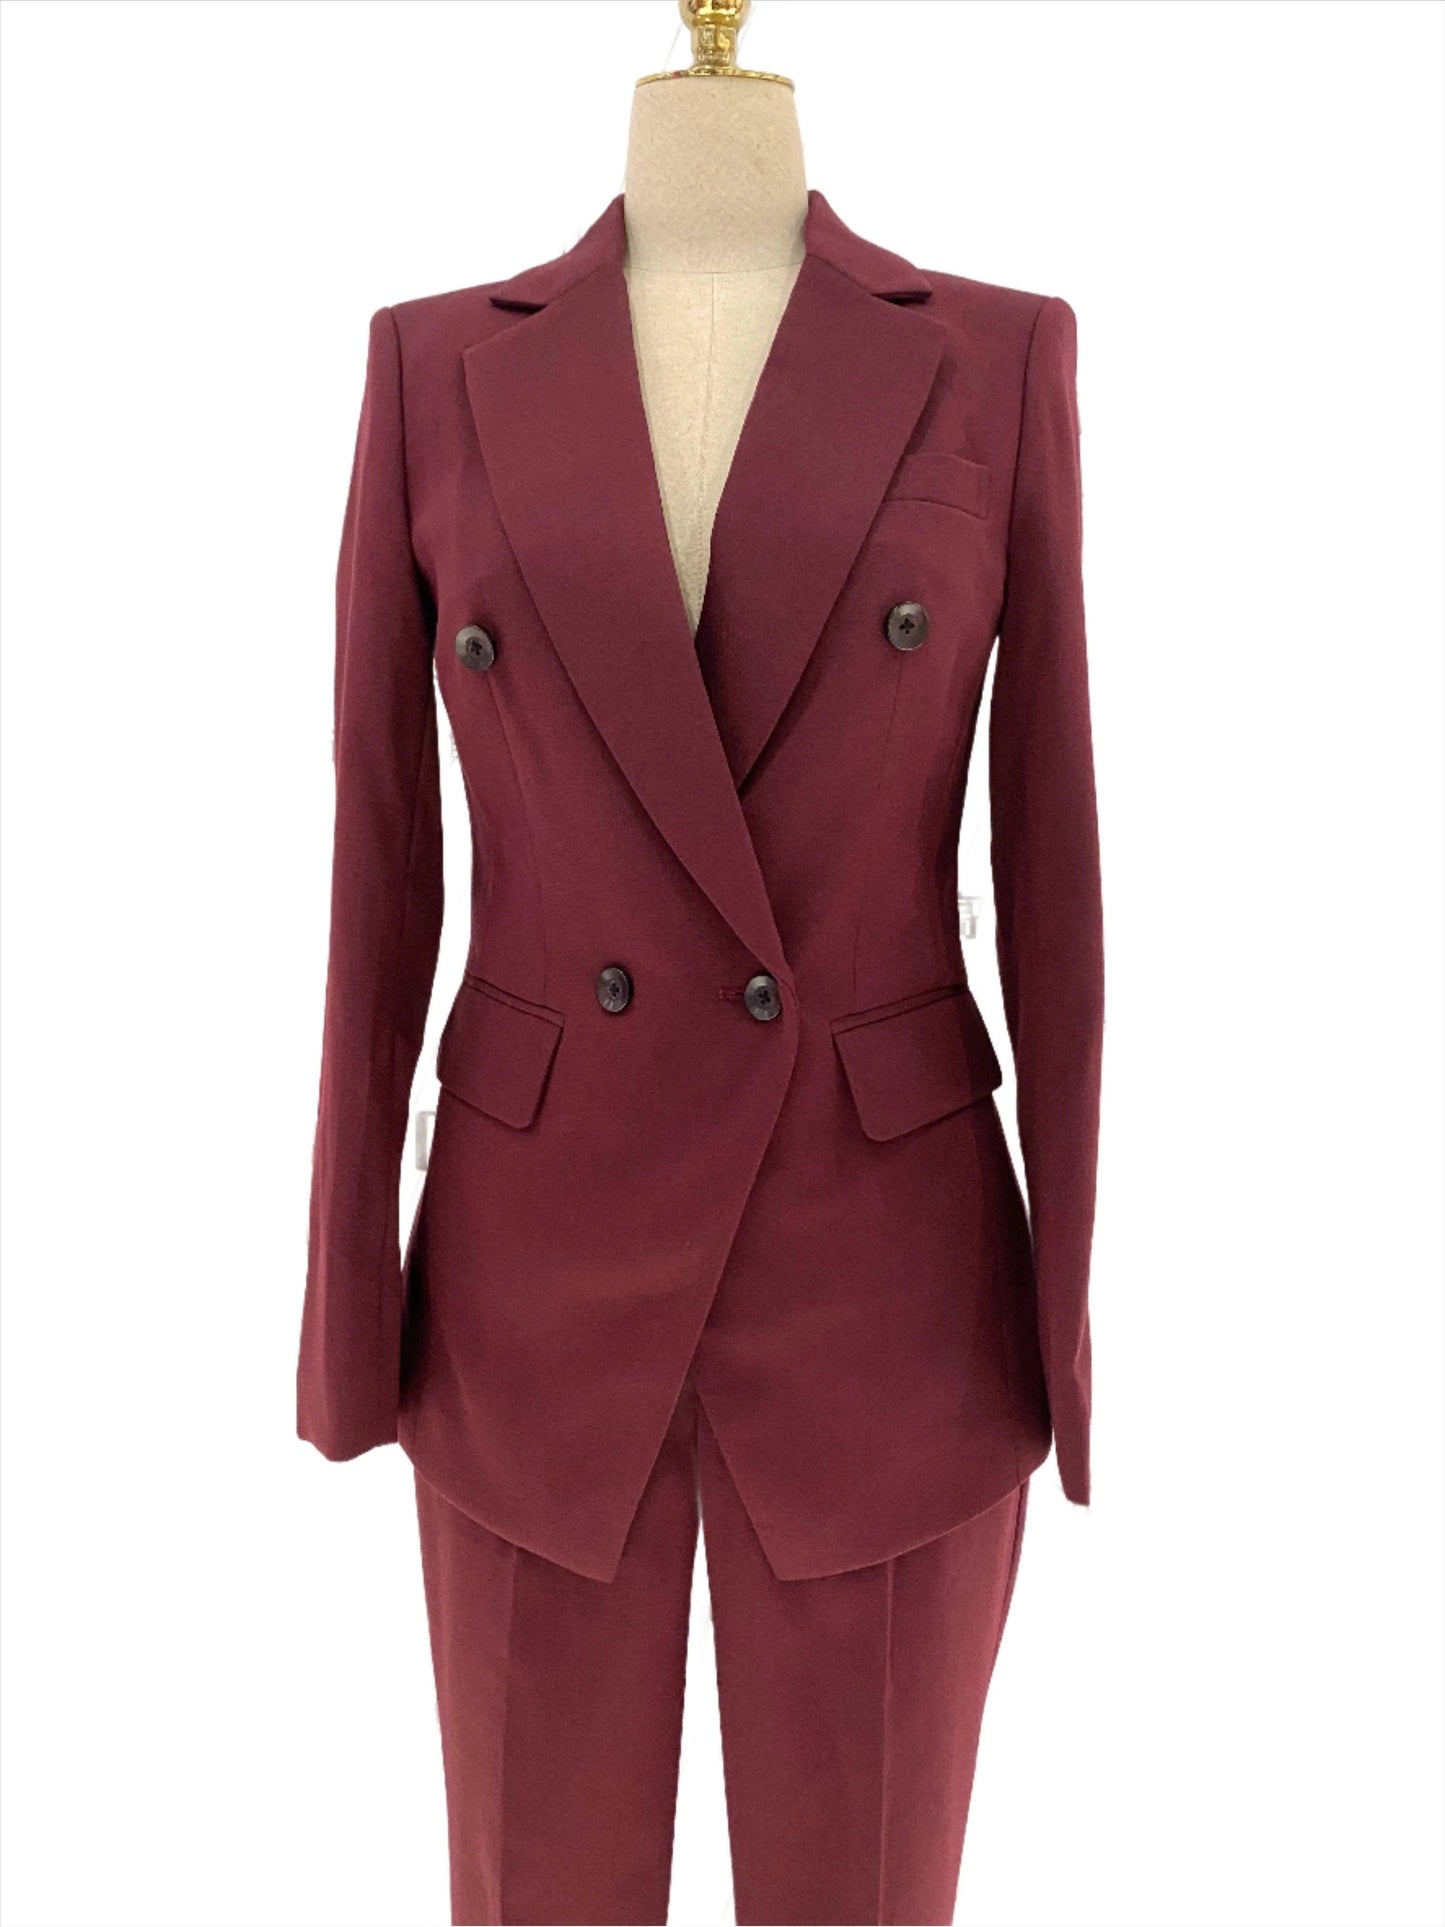 Burgundy Women Pant Suit- Formal Business Trouser Suit - Pantsuit - Guocali